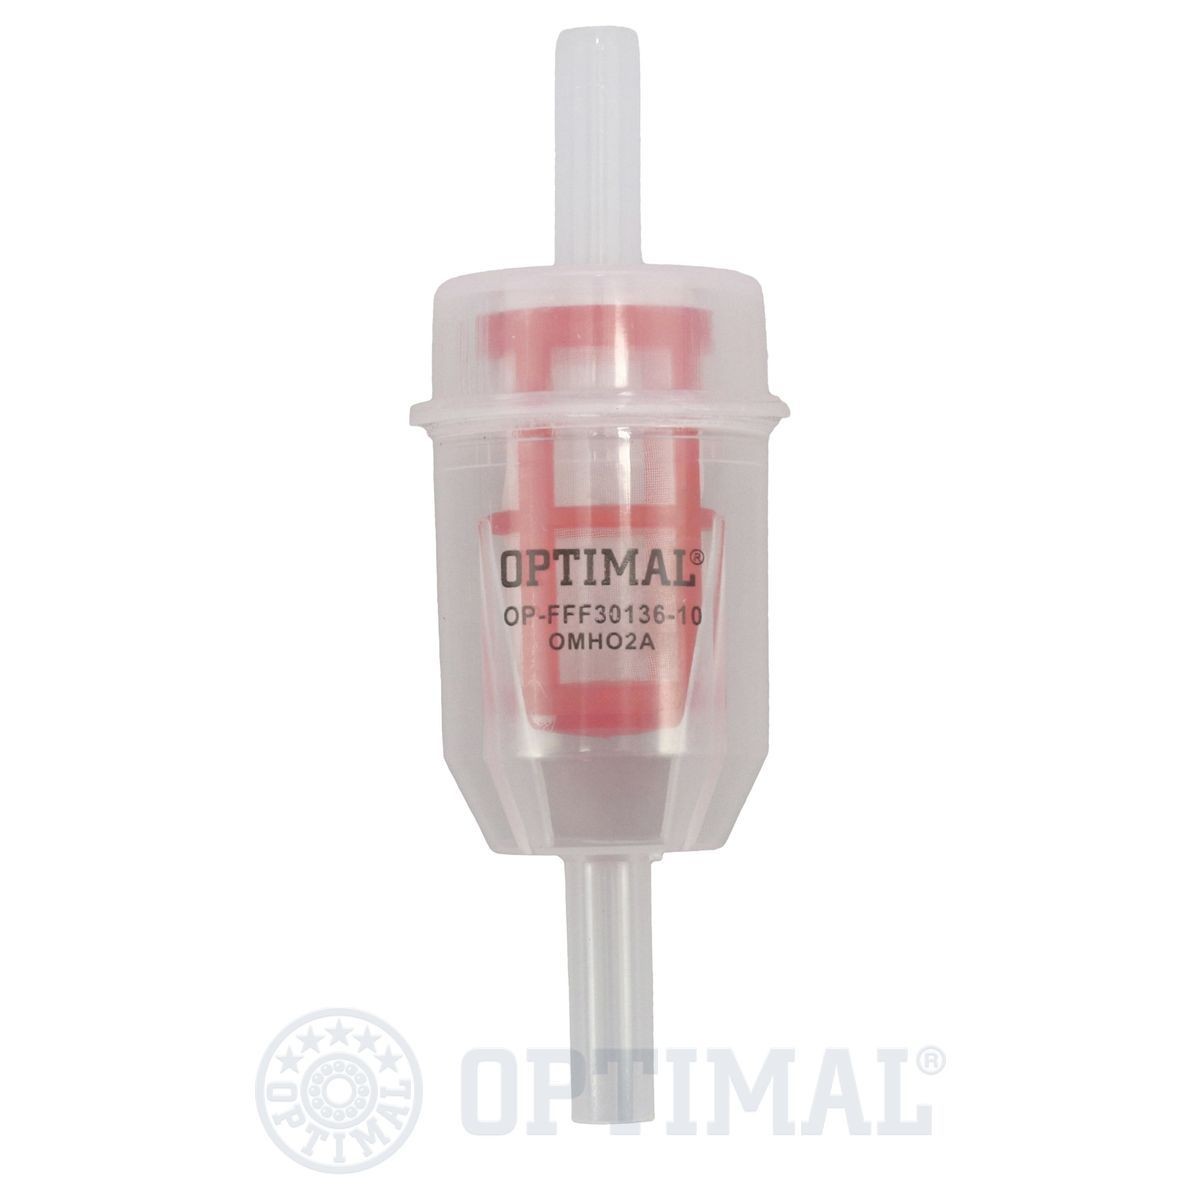 OPTIMAL OP-FFF30136-10 Fuel filter 00 1140 821 1